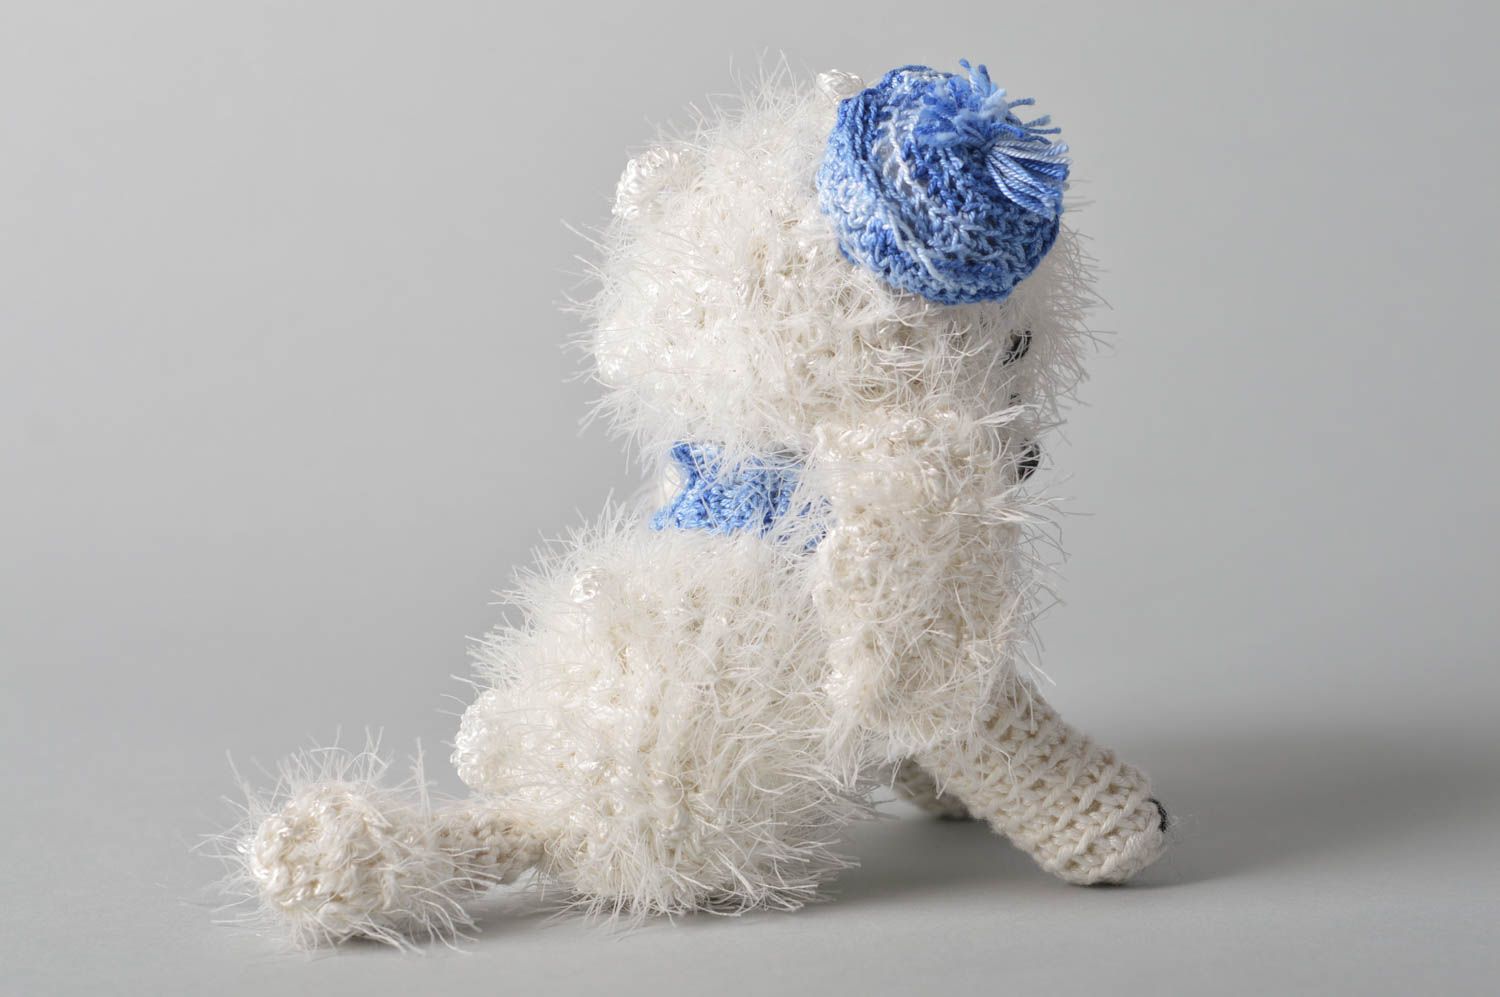 Handmade Spielzeug Hund Kuscheltier gehäkelt Geschenk Idee für Kinder